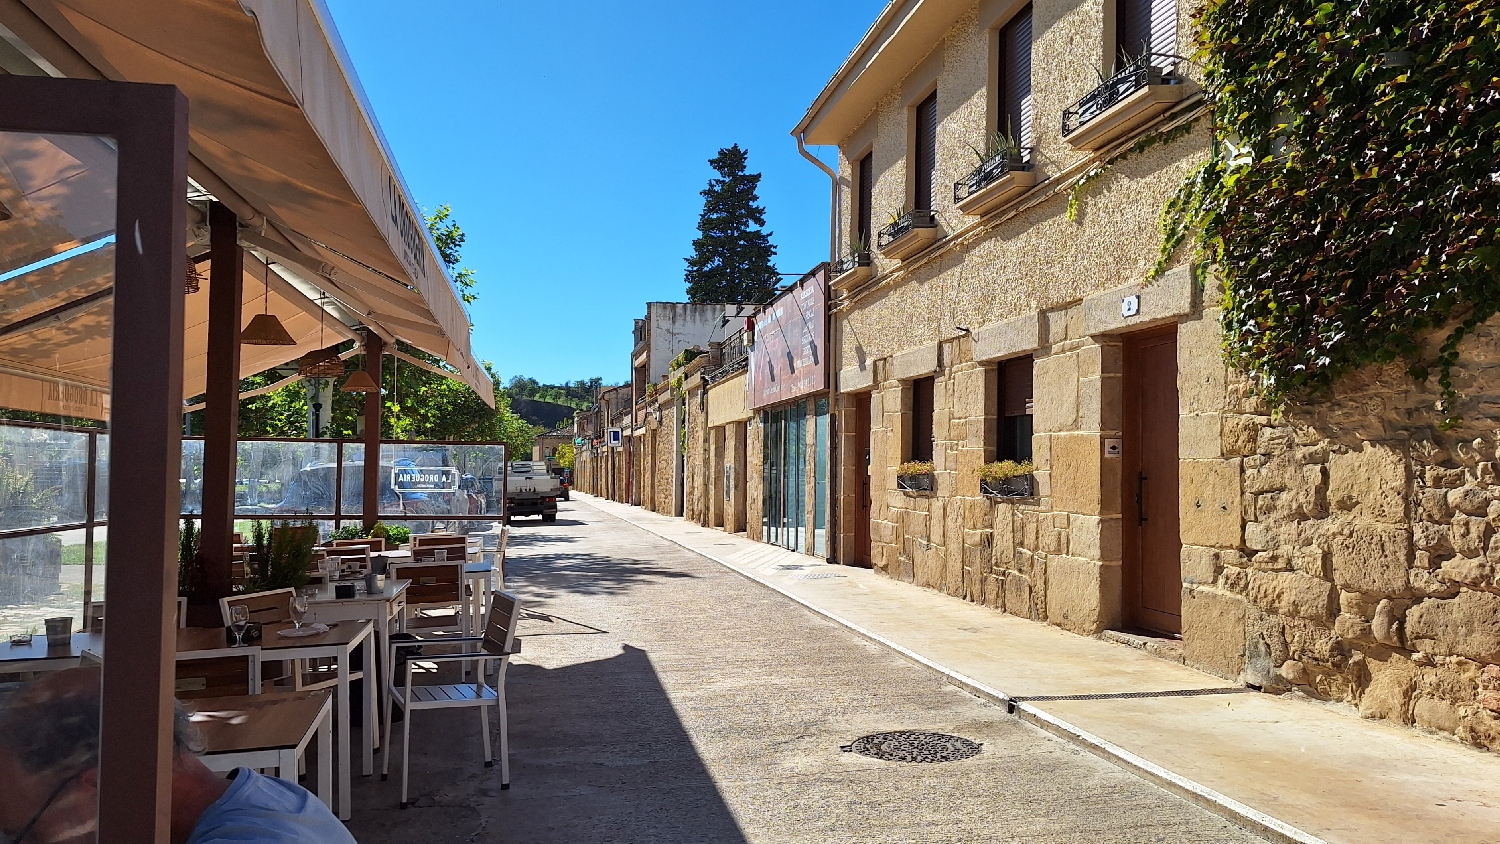 El Camino, Aragon út, Francia út, Puente la Reina, a széles úton rengeteg bár, étterem és nem utolsó sorban a buszmegálló is itt található